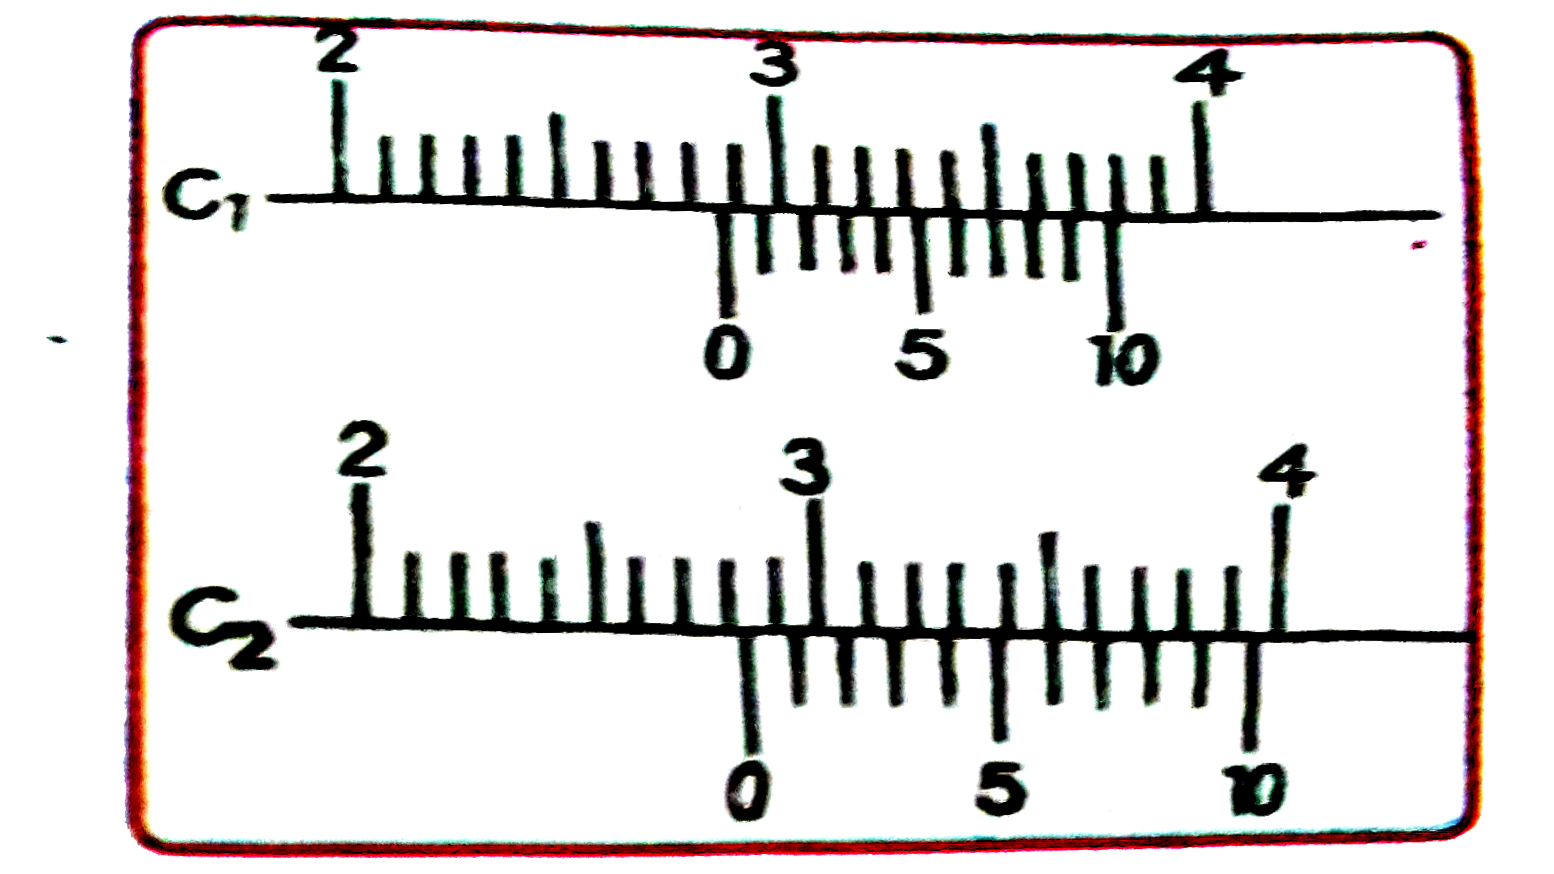 दो वर्नियर कैलिपर्स इस तरह से हैं कि उनके मुख्य पैमाने का 1 समी, 10 समभागों में विभाजित है। एक कैलिपर (C(1)) के वर्नियर पमाने पर 10 बराबर भाग हैं जो कि मुख्य पैमा के 9 भागों के बराबर है। दूसरे कैलिपर (C(2)) के वर्नियर पैमाने पर भी 10 बराबर भाग हैं जो कि मुख्य पैमाने के 11 भागों के बराबर हैं। दोनों कैलिपर्स के पठनों को चित्र में दर्शाया गया है। C(1) तथा C(2)  द्वारा मापे गए सही मान (सेमी में) क्रमश: हैं :